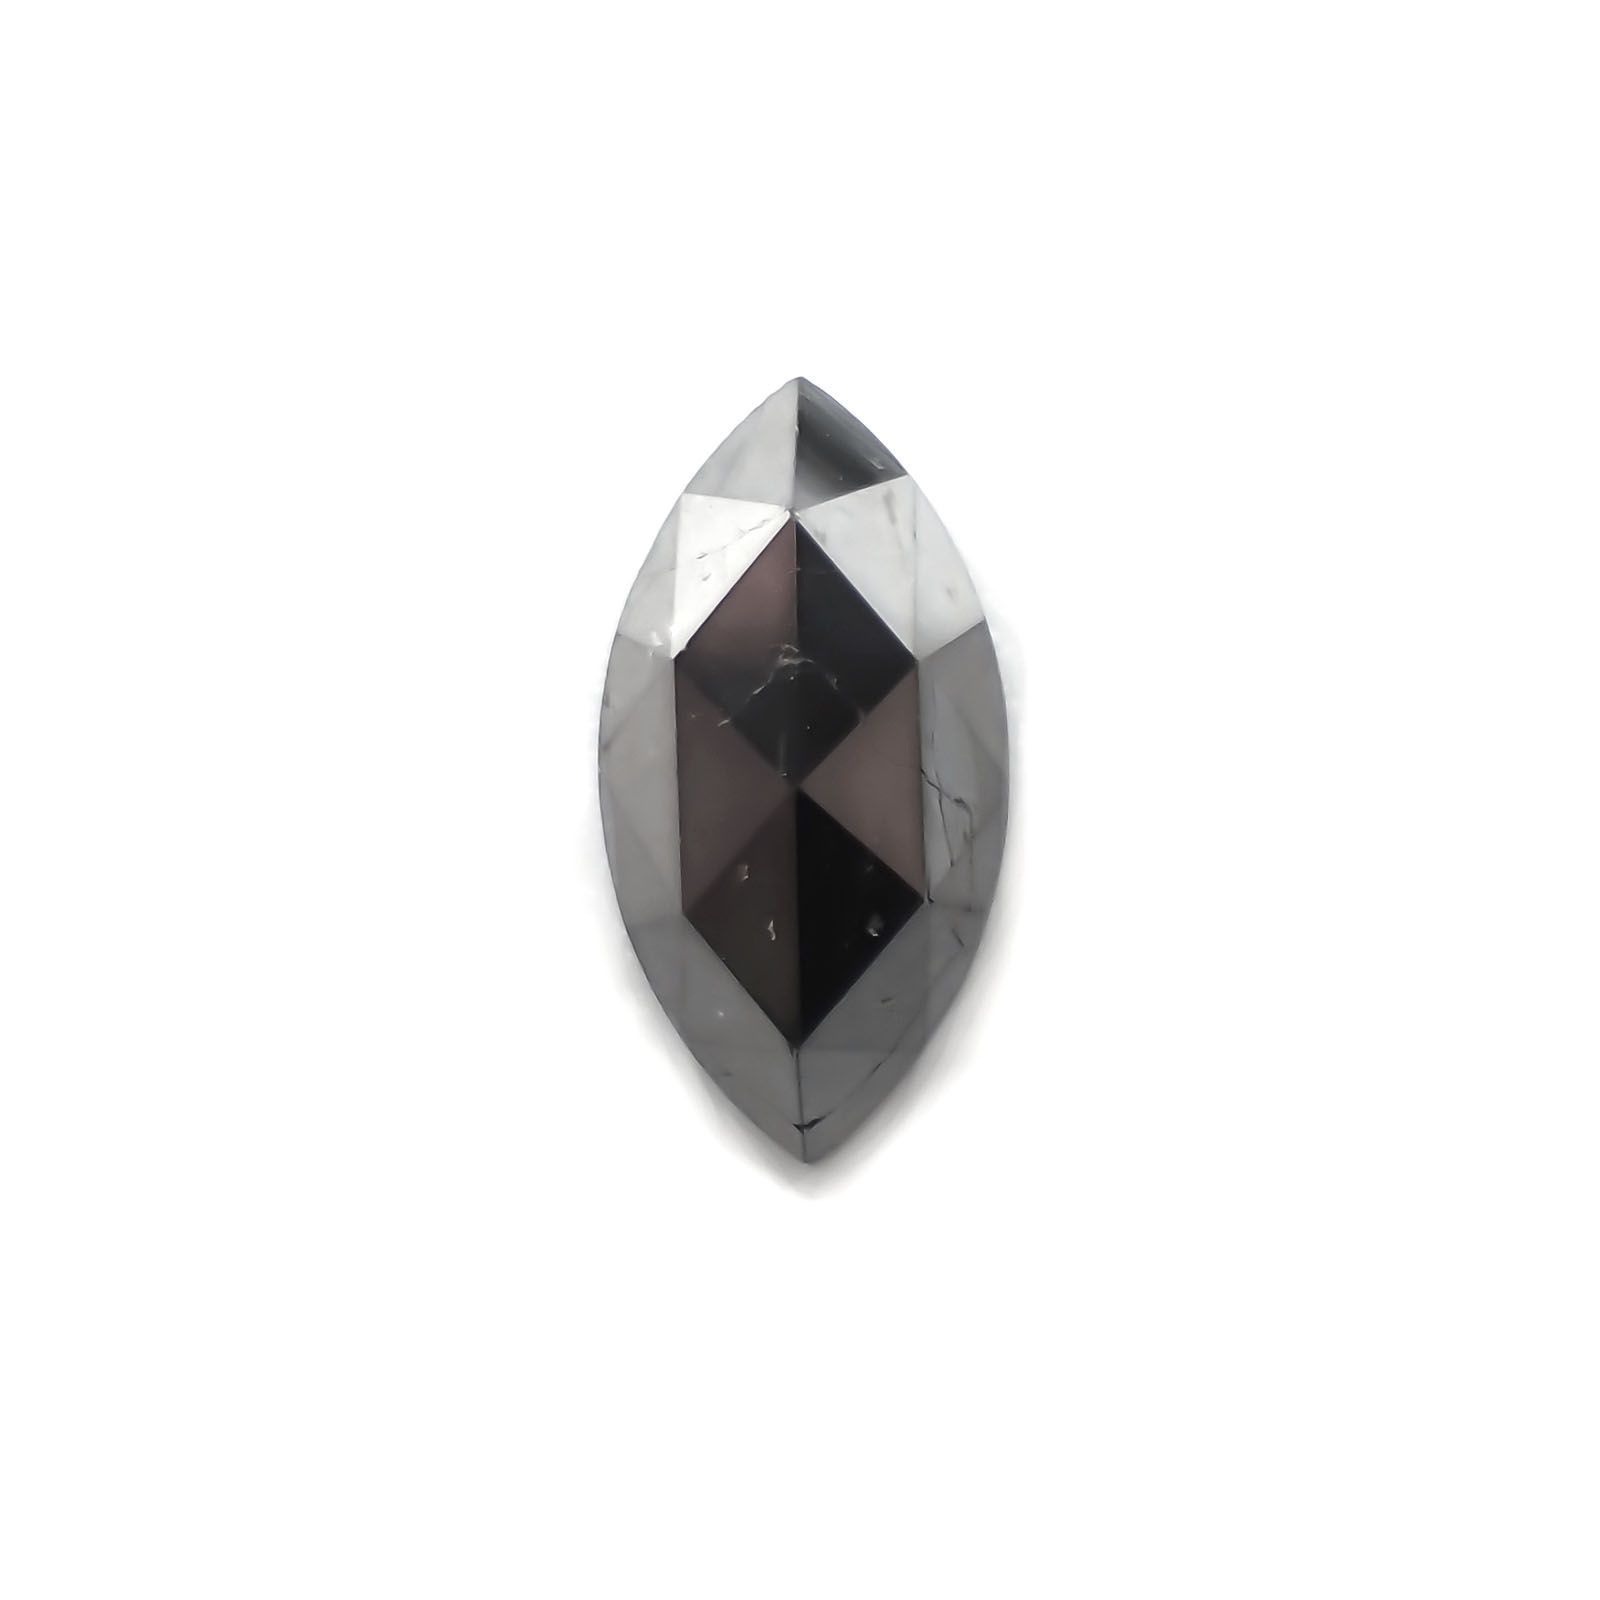 ブラックダイヤモンド(宝石名ダイアモンド) ジンバブエ産 1.57ct 識別